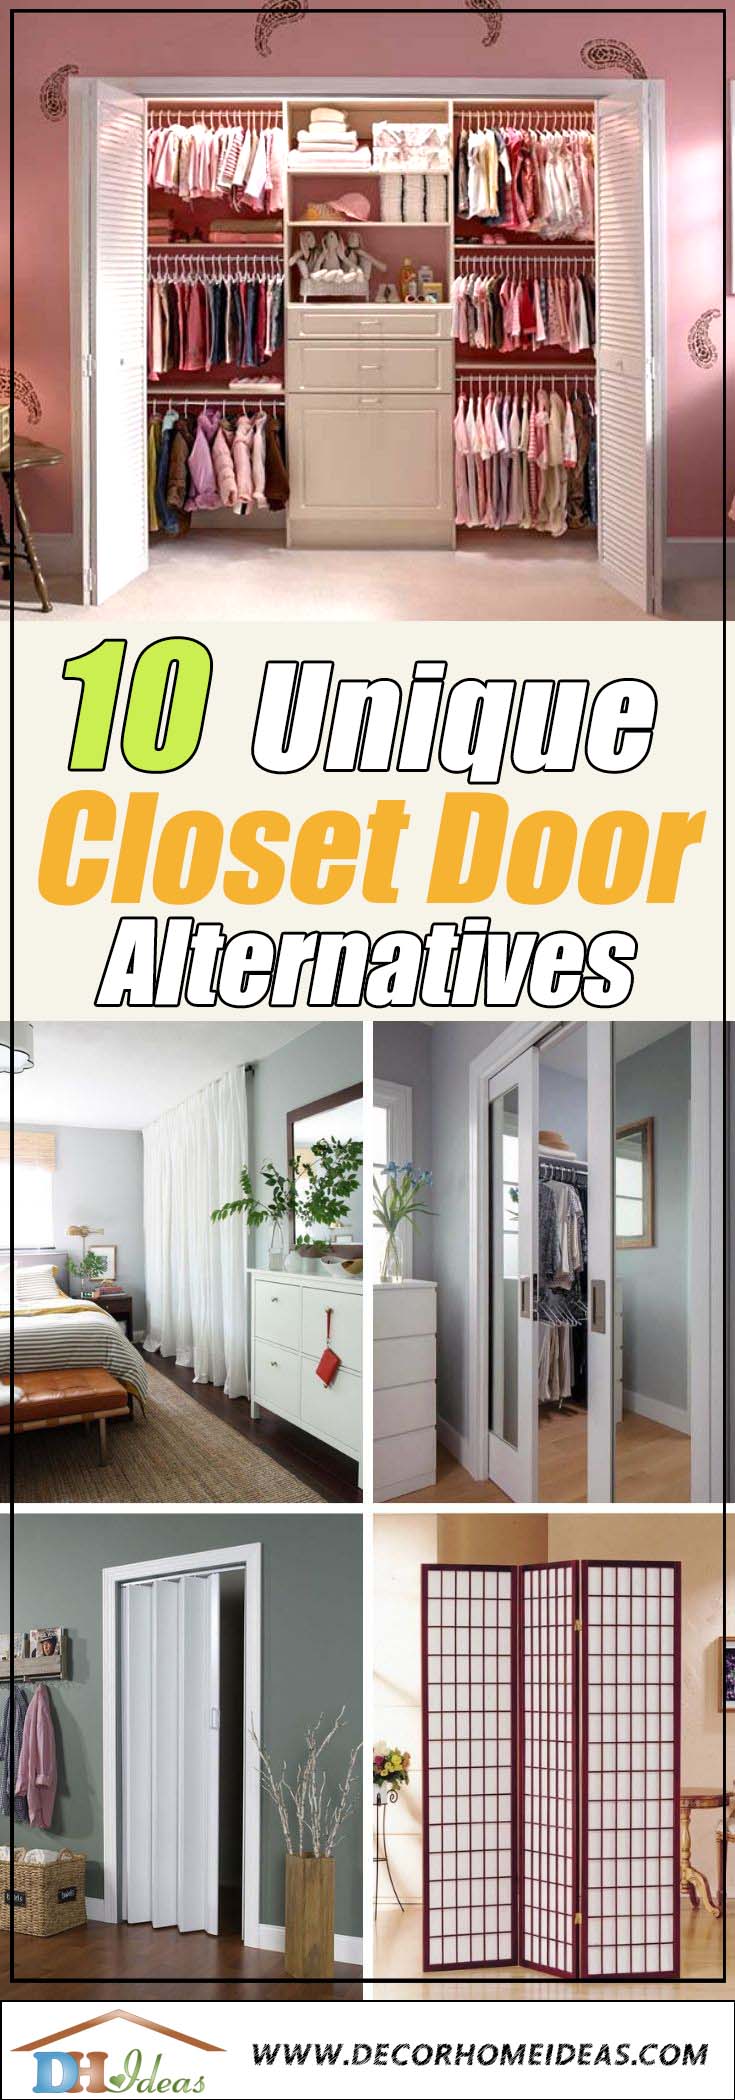 Best Closet Door Alternatives and Options #closet #doors #organization #decorhomeideas